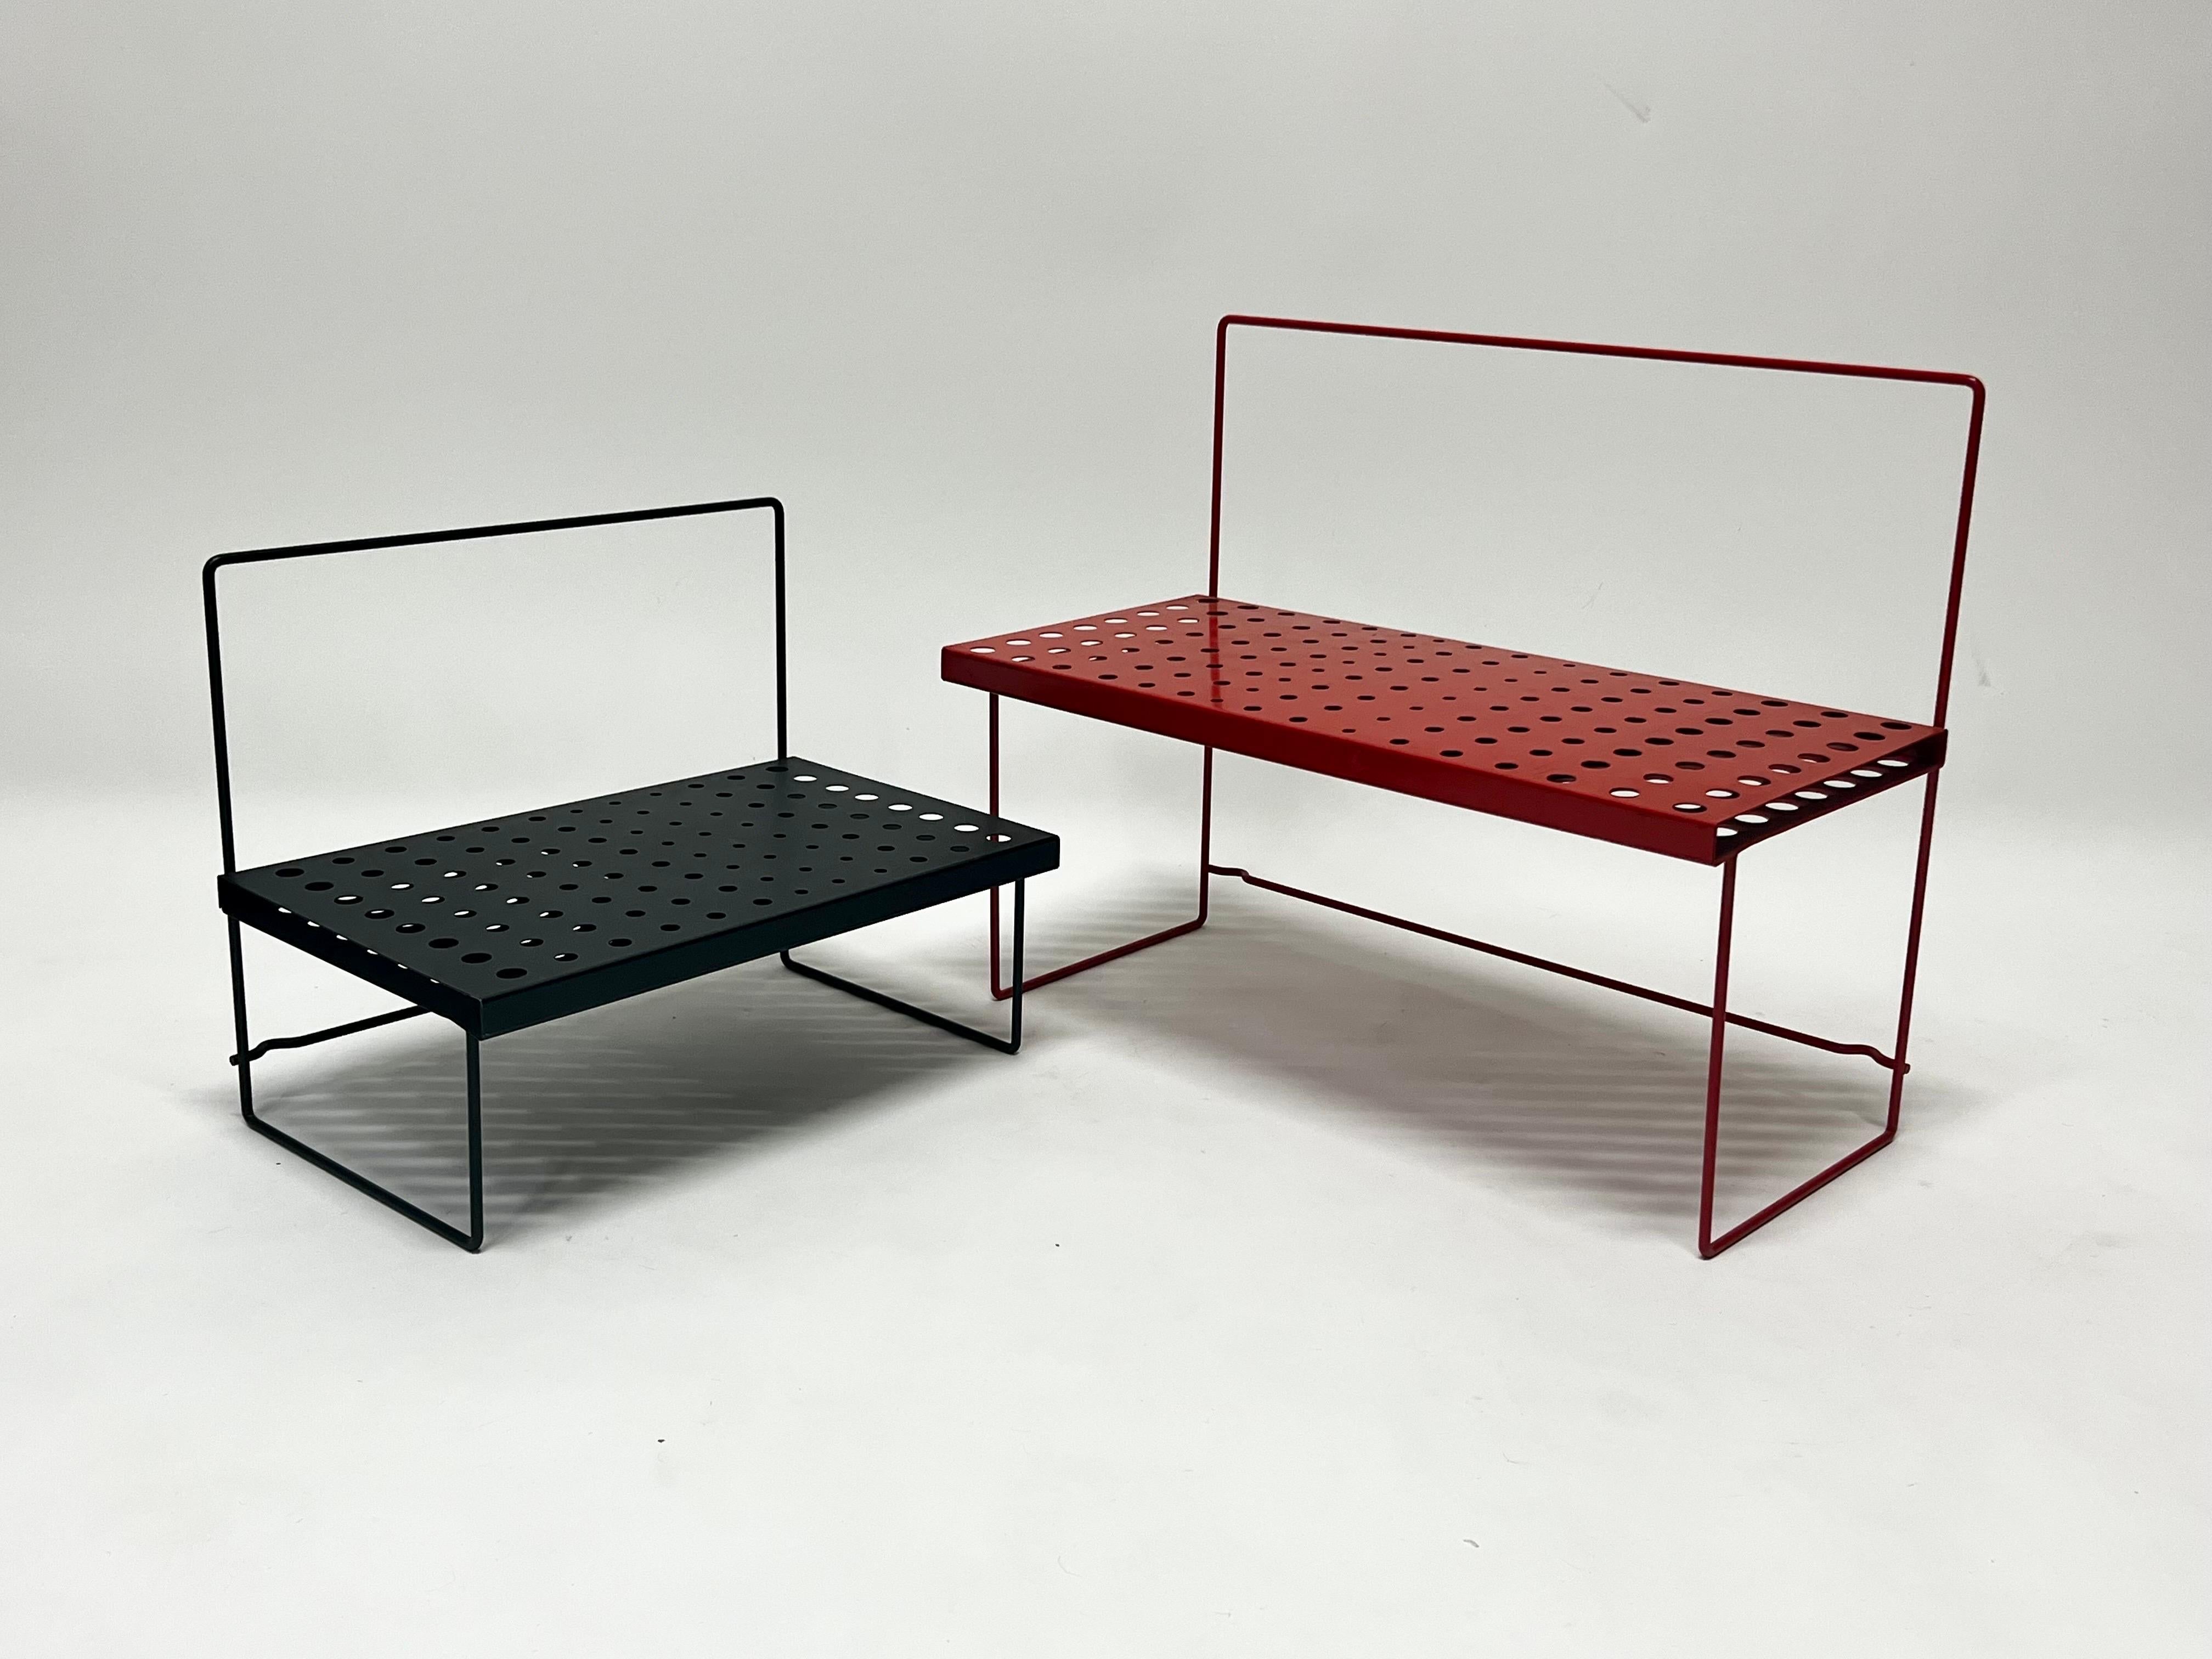 Schönes Paar rote und schwarze niedrige Tische aus perforiertem Metall im Vintage-Stil, die sich perfekt zum Abstellen von Pflanzen oder anderen Dekorationsgegenständen eignen. Wunderschönes Design. 


Maße: Klein 17,25